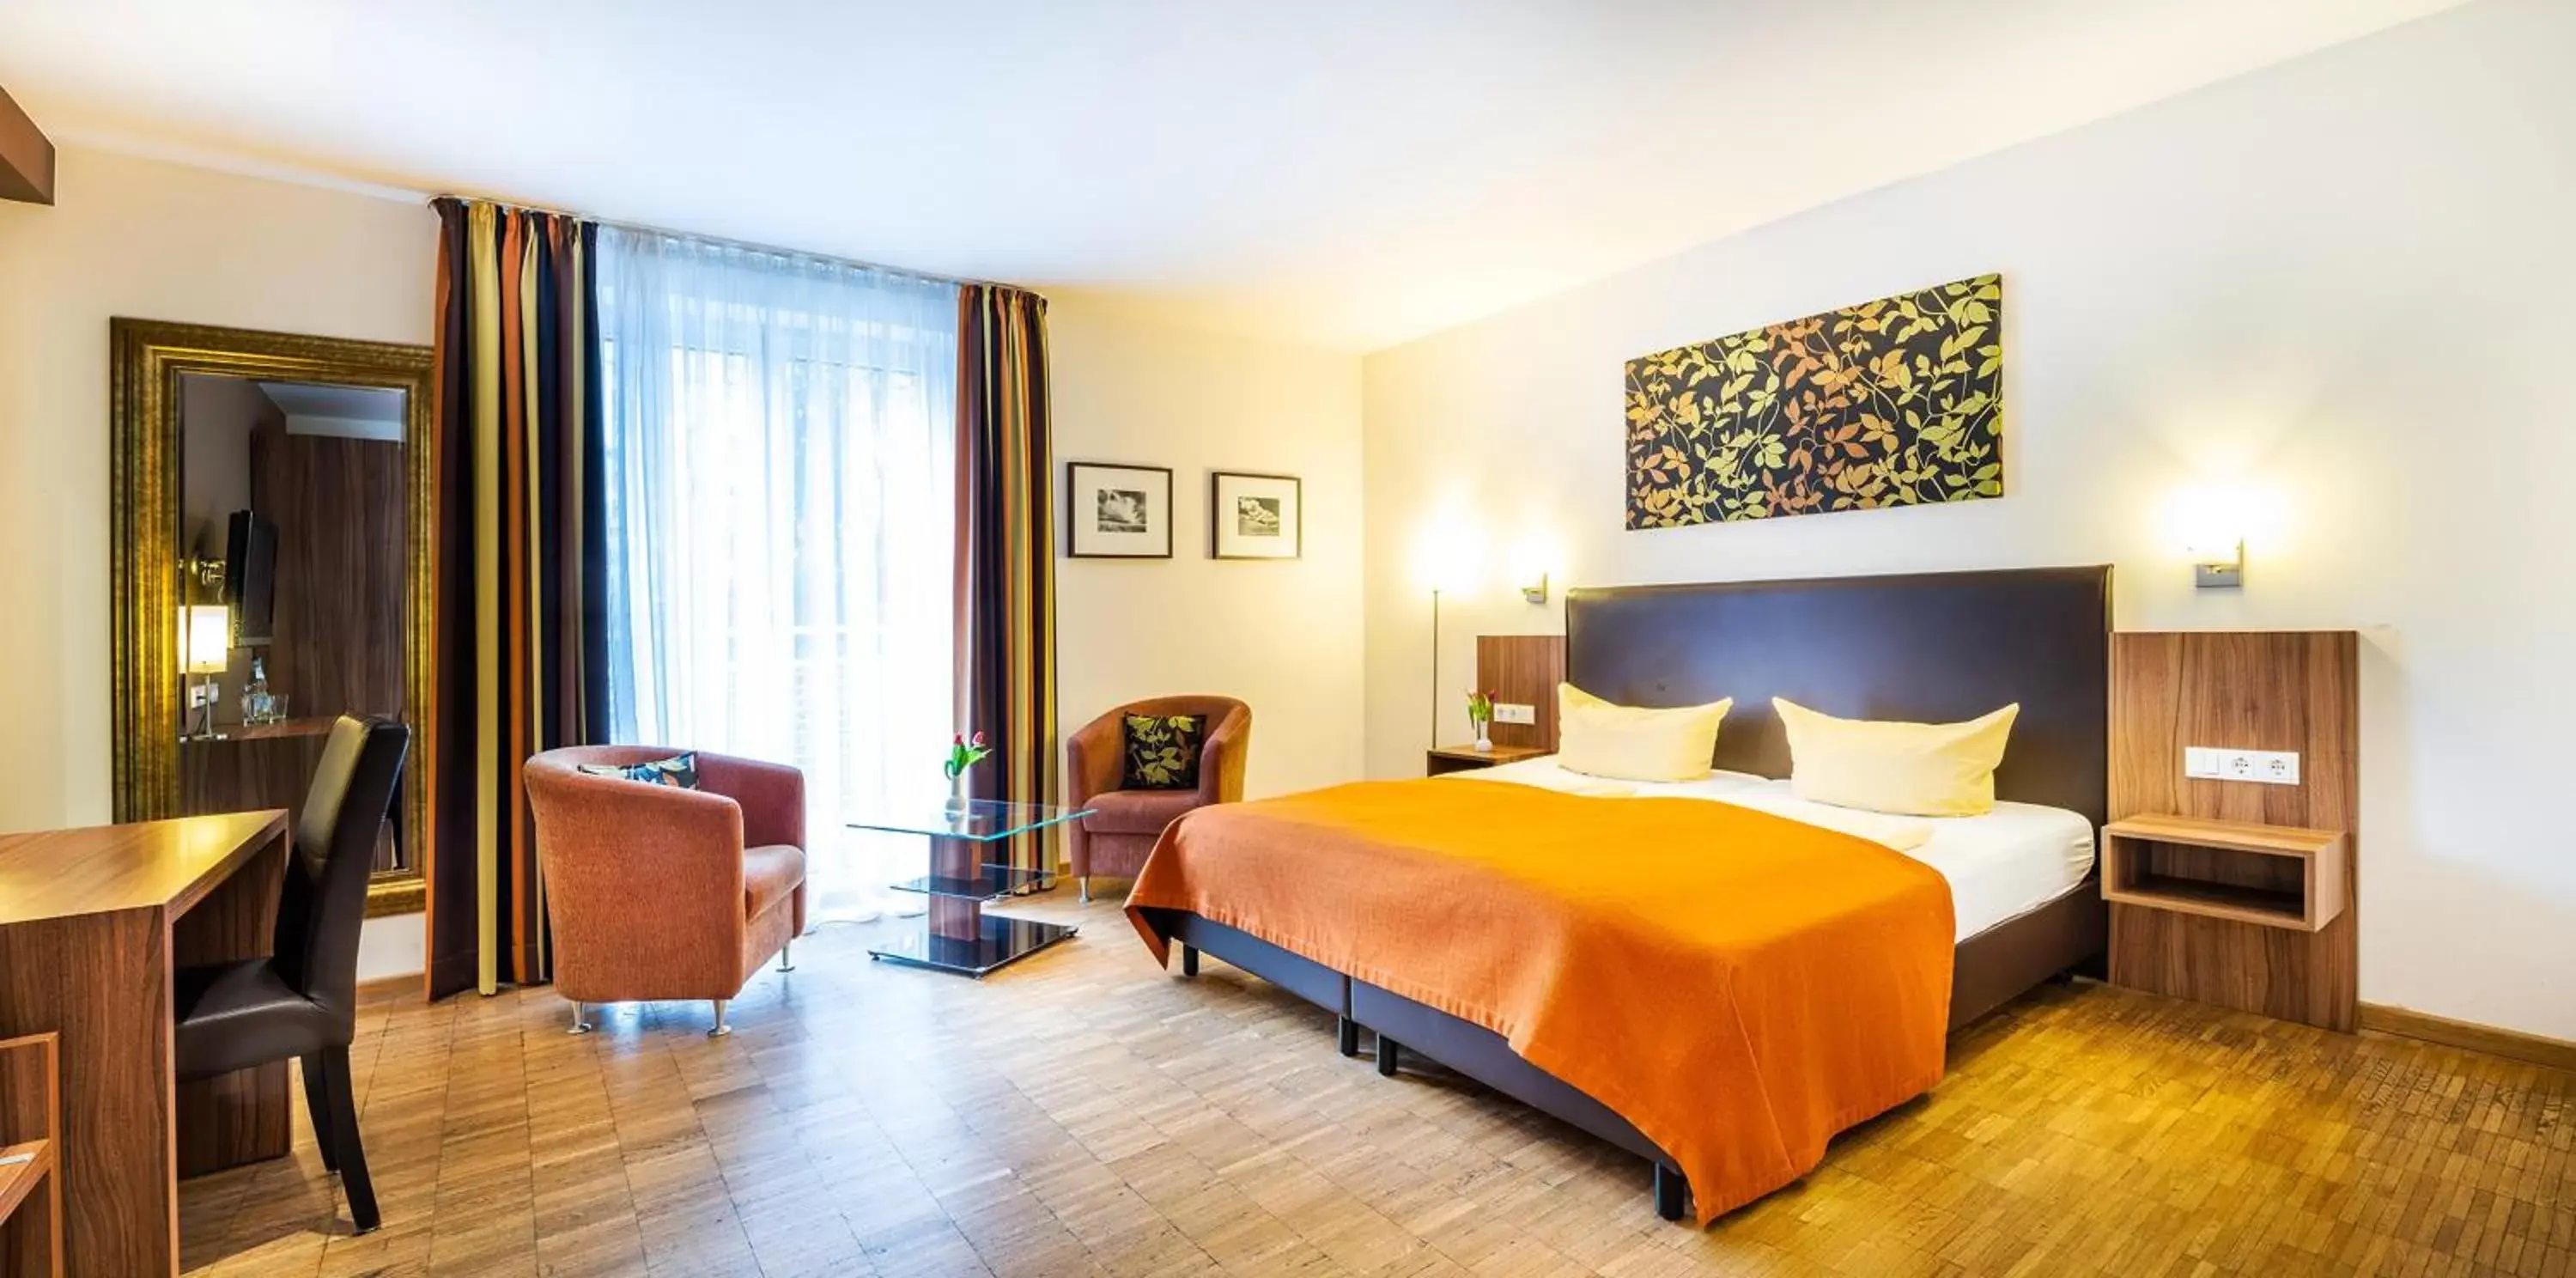 Comfort Double Room in Schroeders Stadtwaldhotel